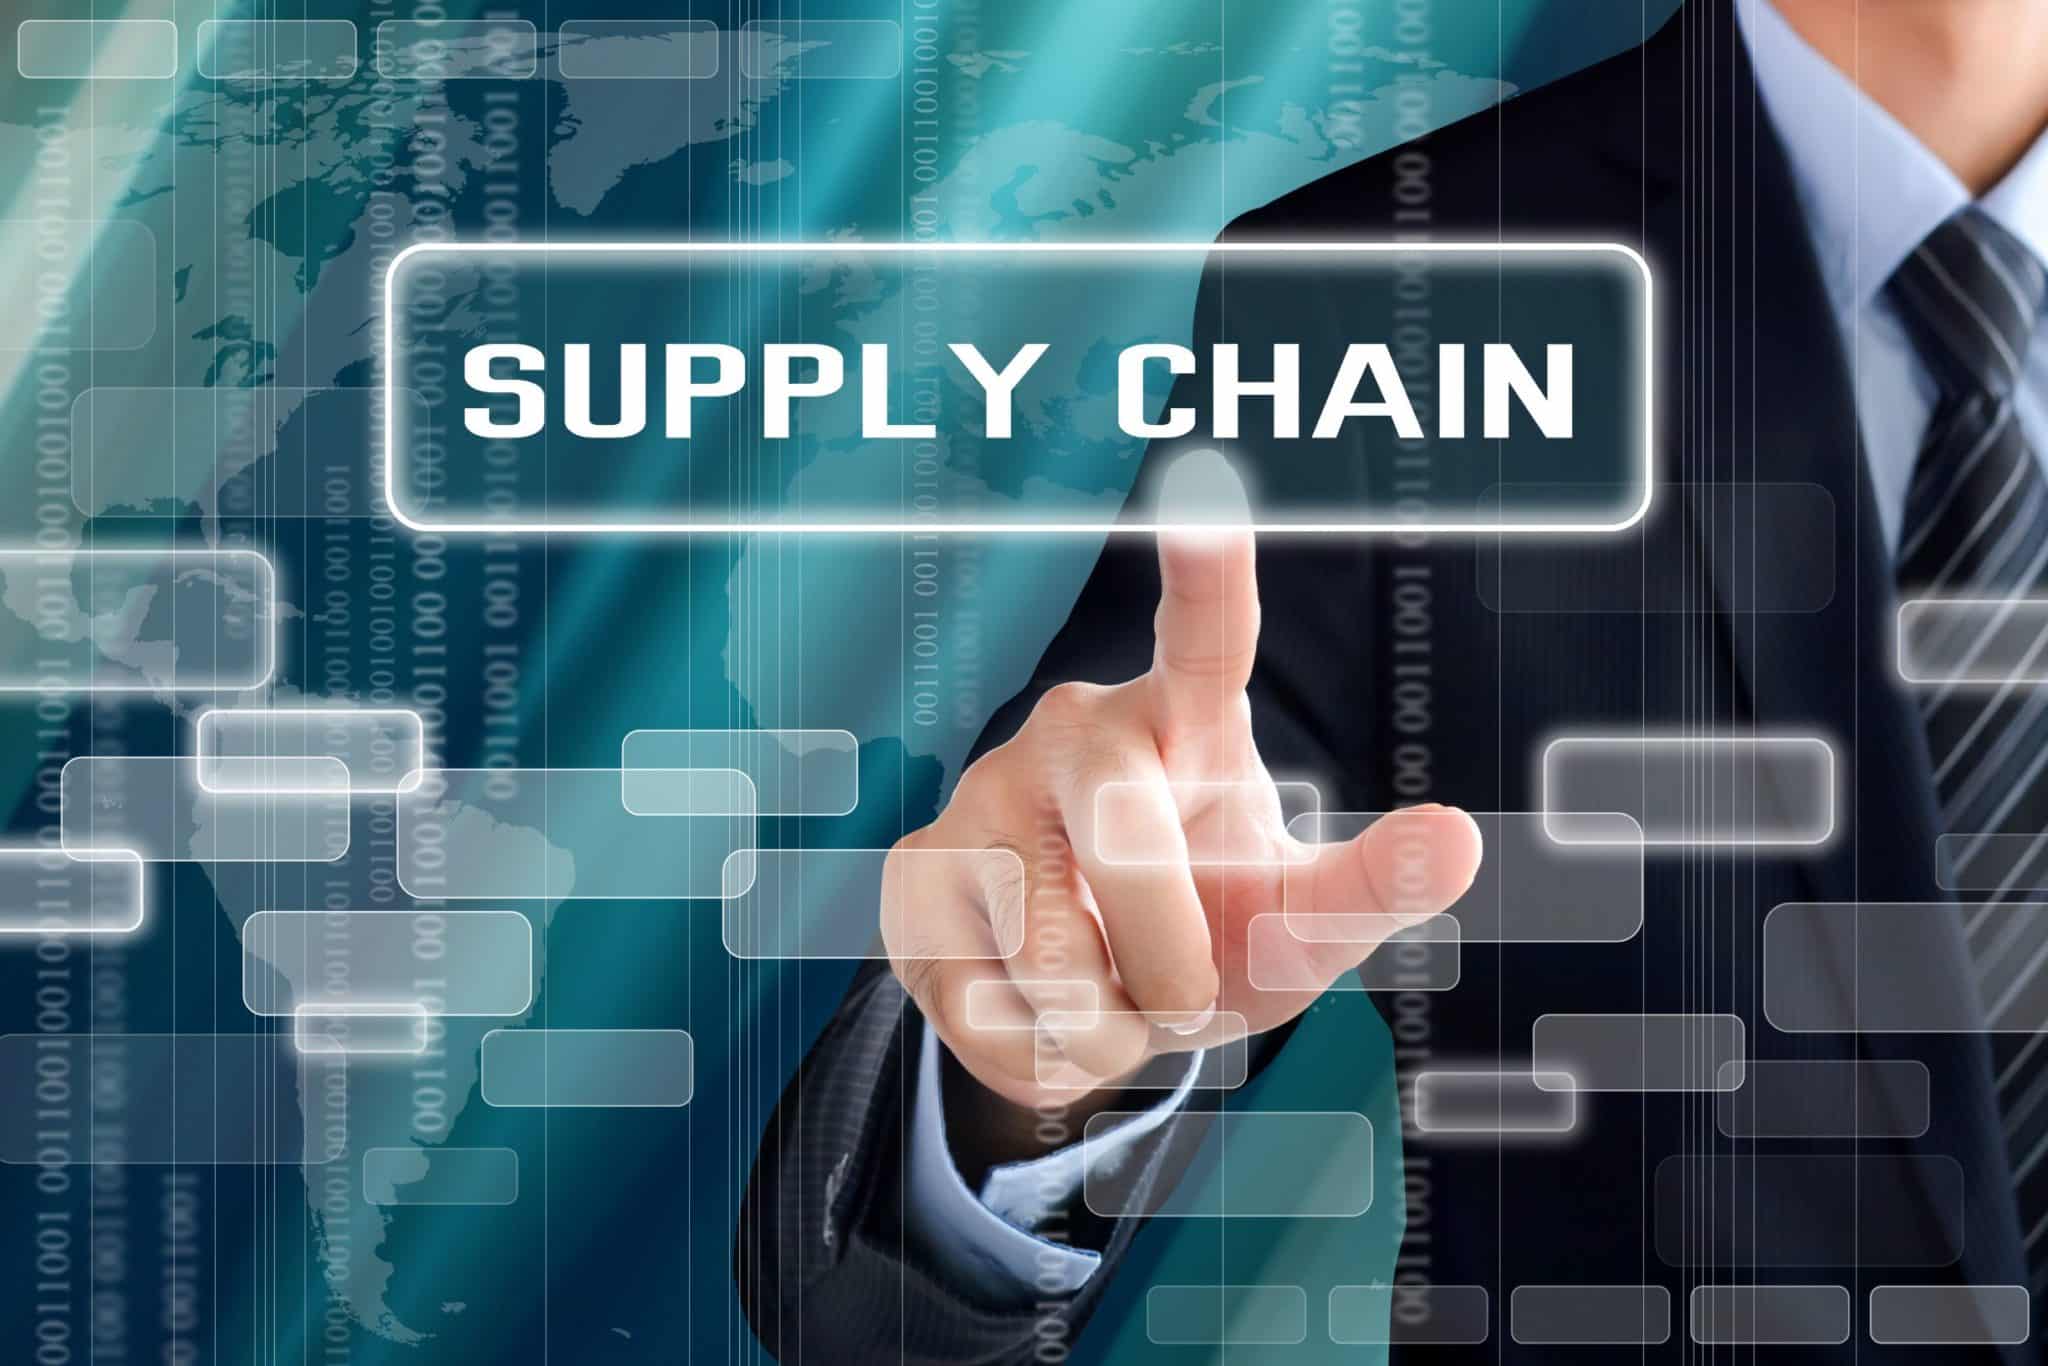 Quest Ce Que La Supply Chain Définition Enjeux And Perspectives 8281